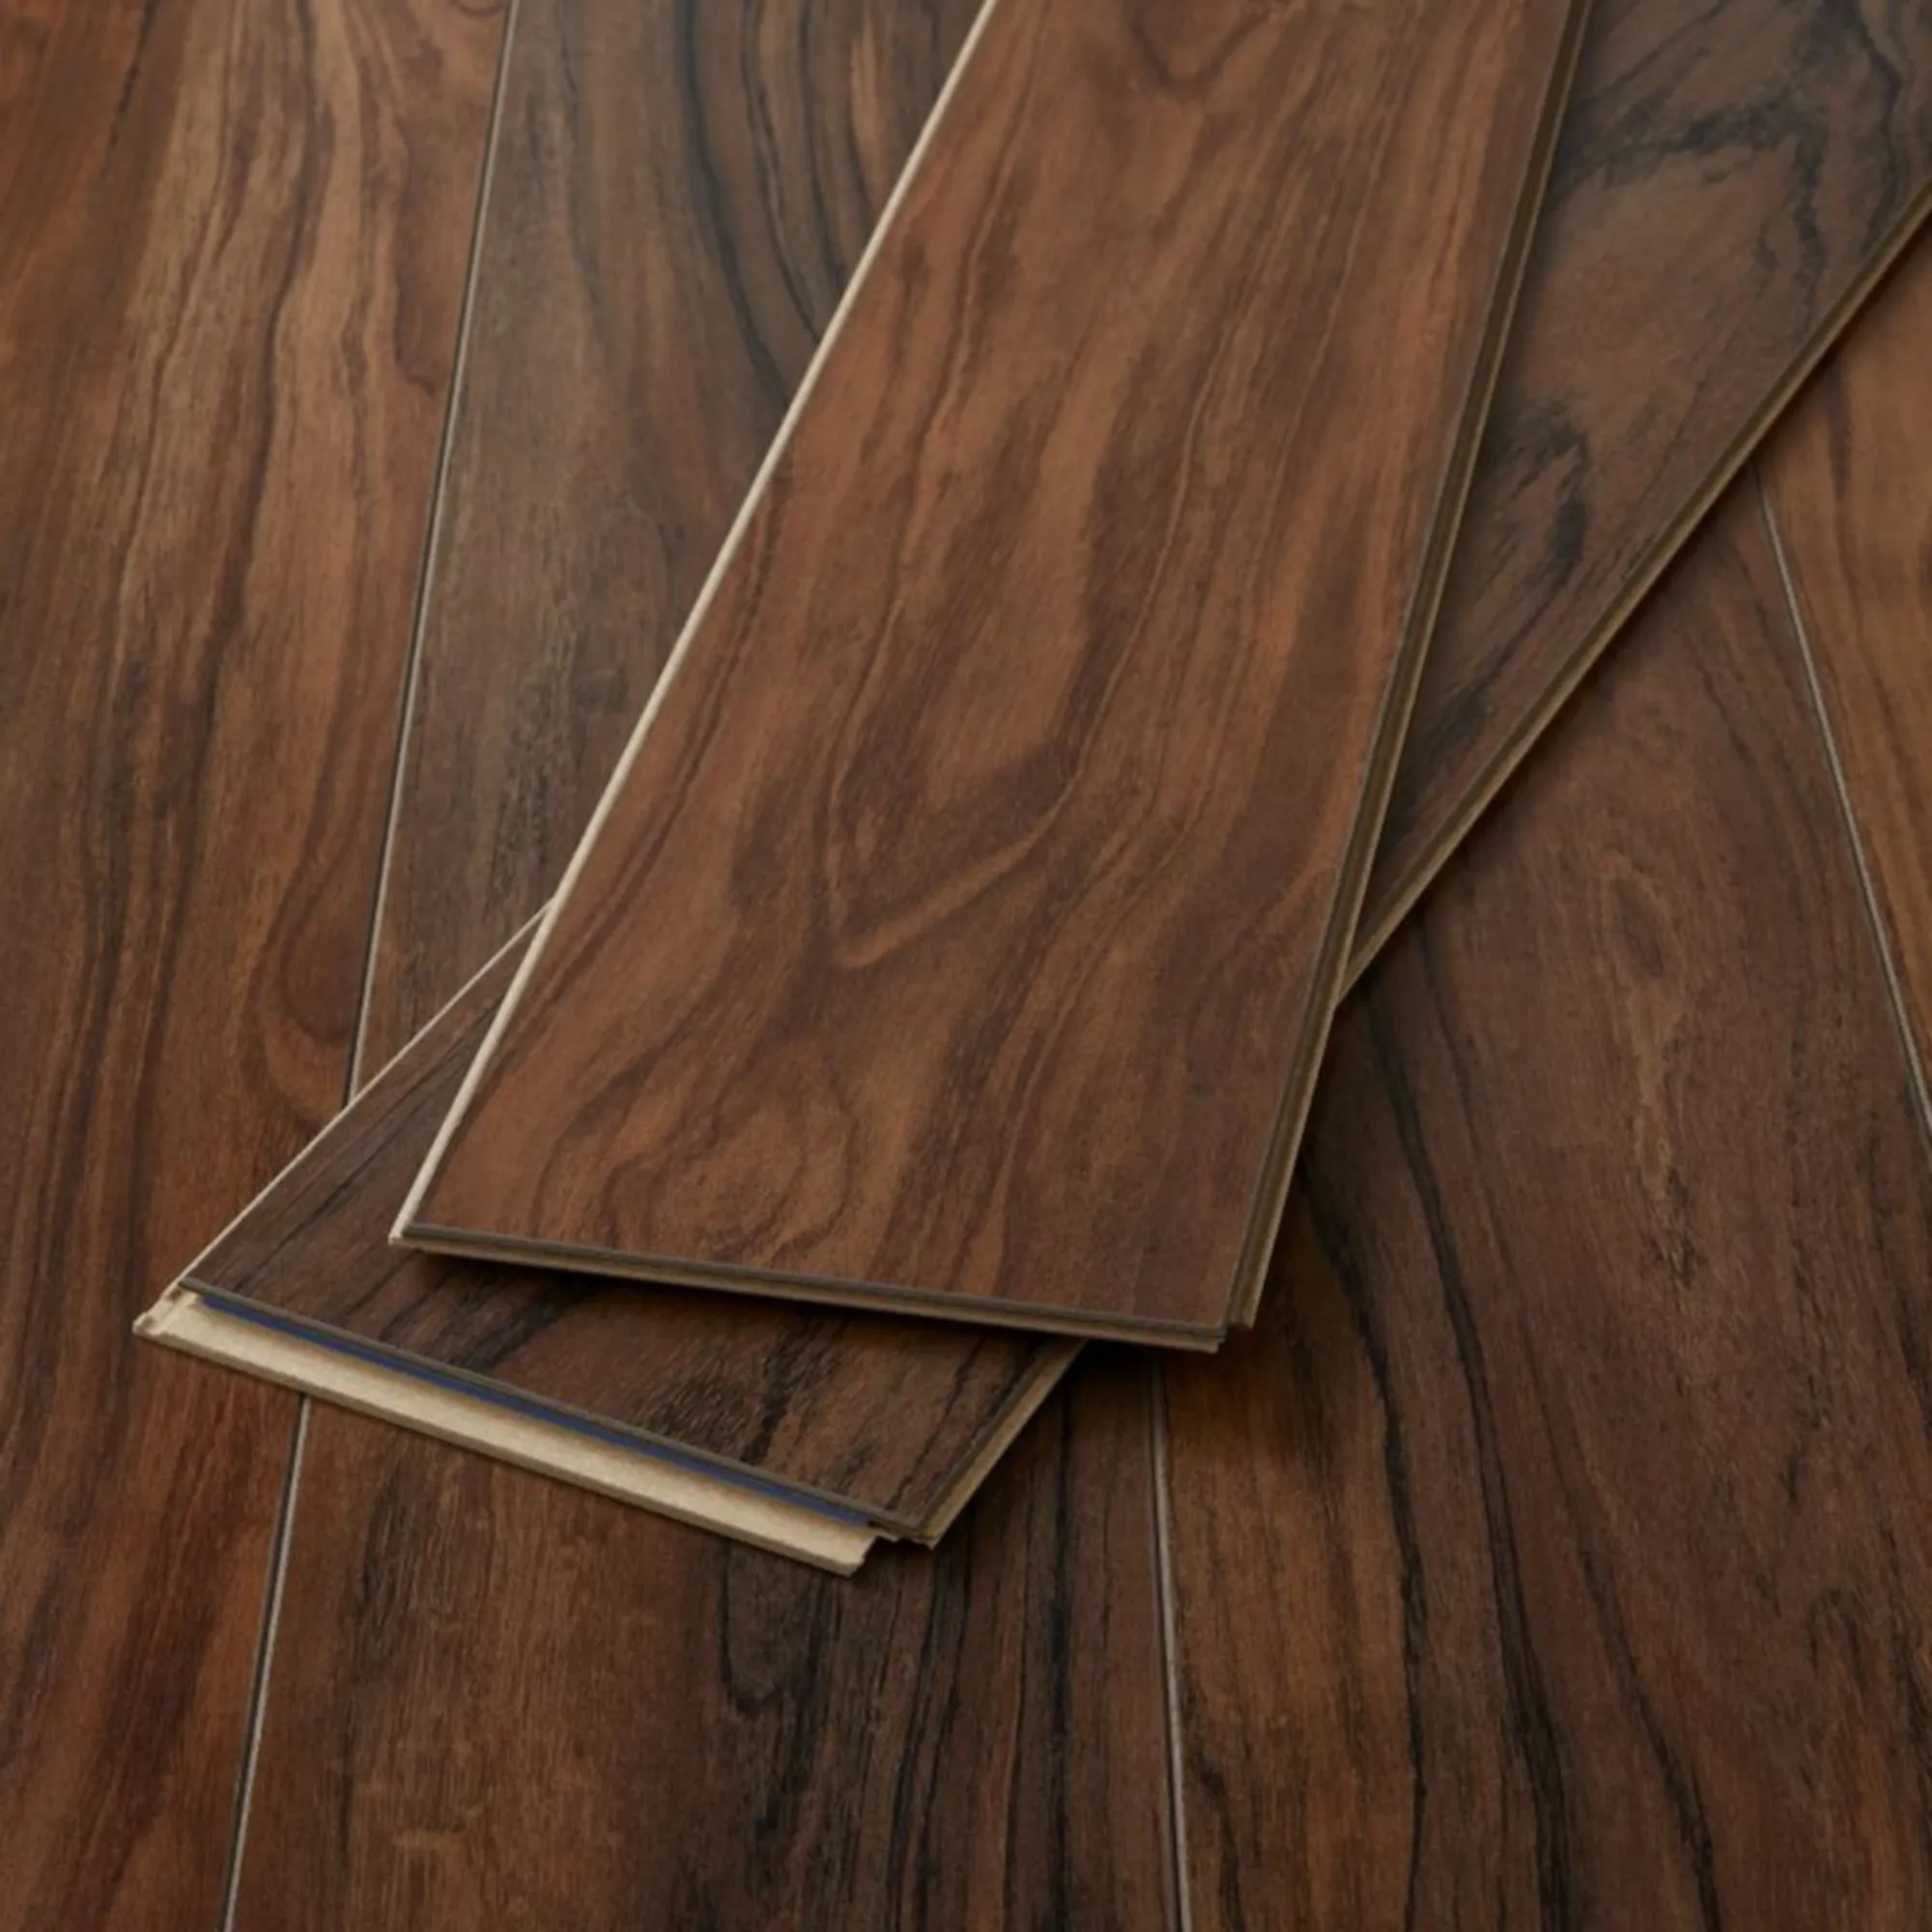 Bannerton Natural Gloss Mahogany effect Laminate Flooring Sample